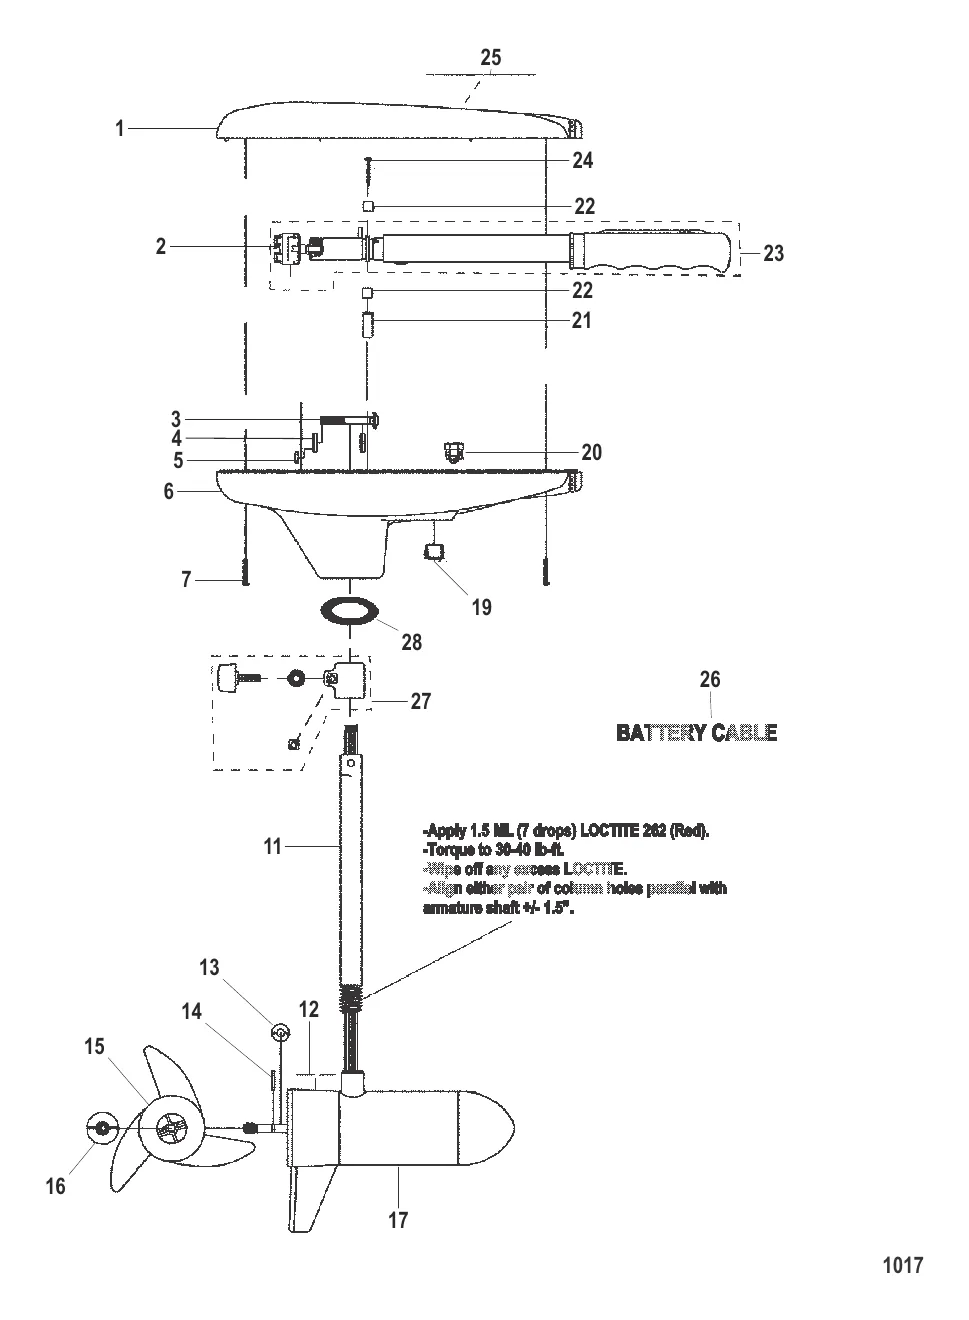 Двигатель для тралового лова в сборе (Модель 543) (12 В)